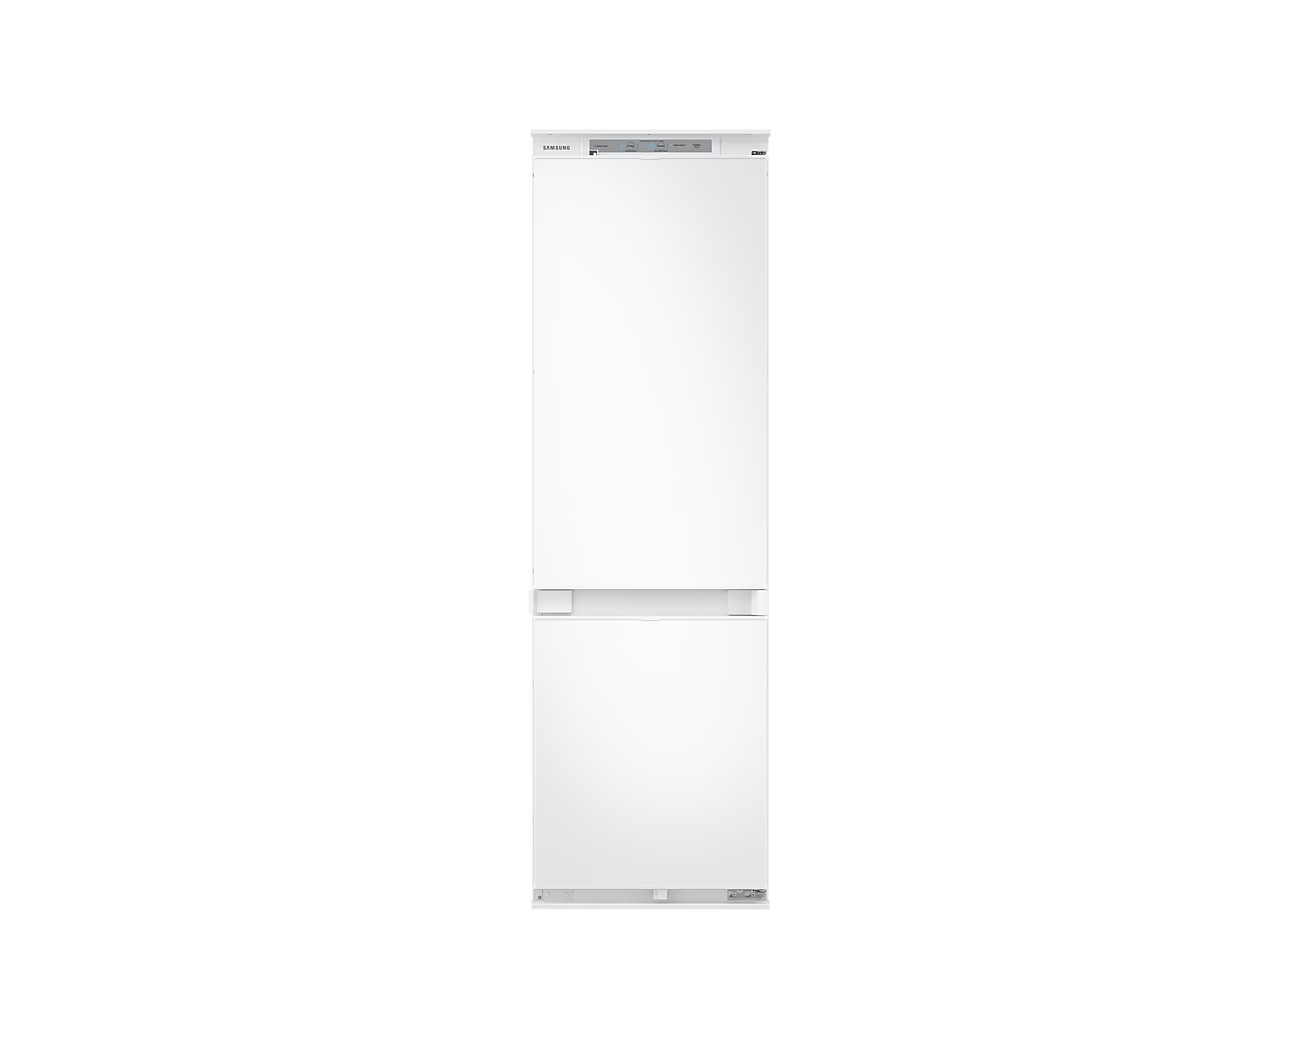 Встраиваемый холодильник Samsung BRB26605DWW